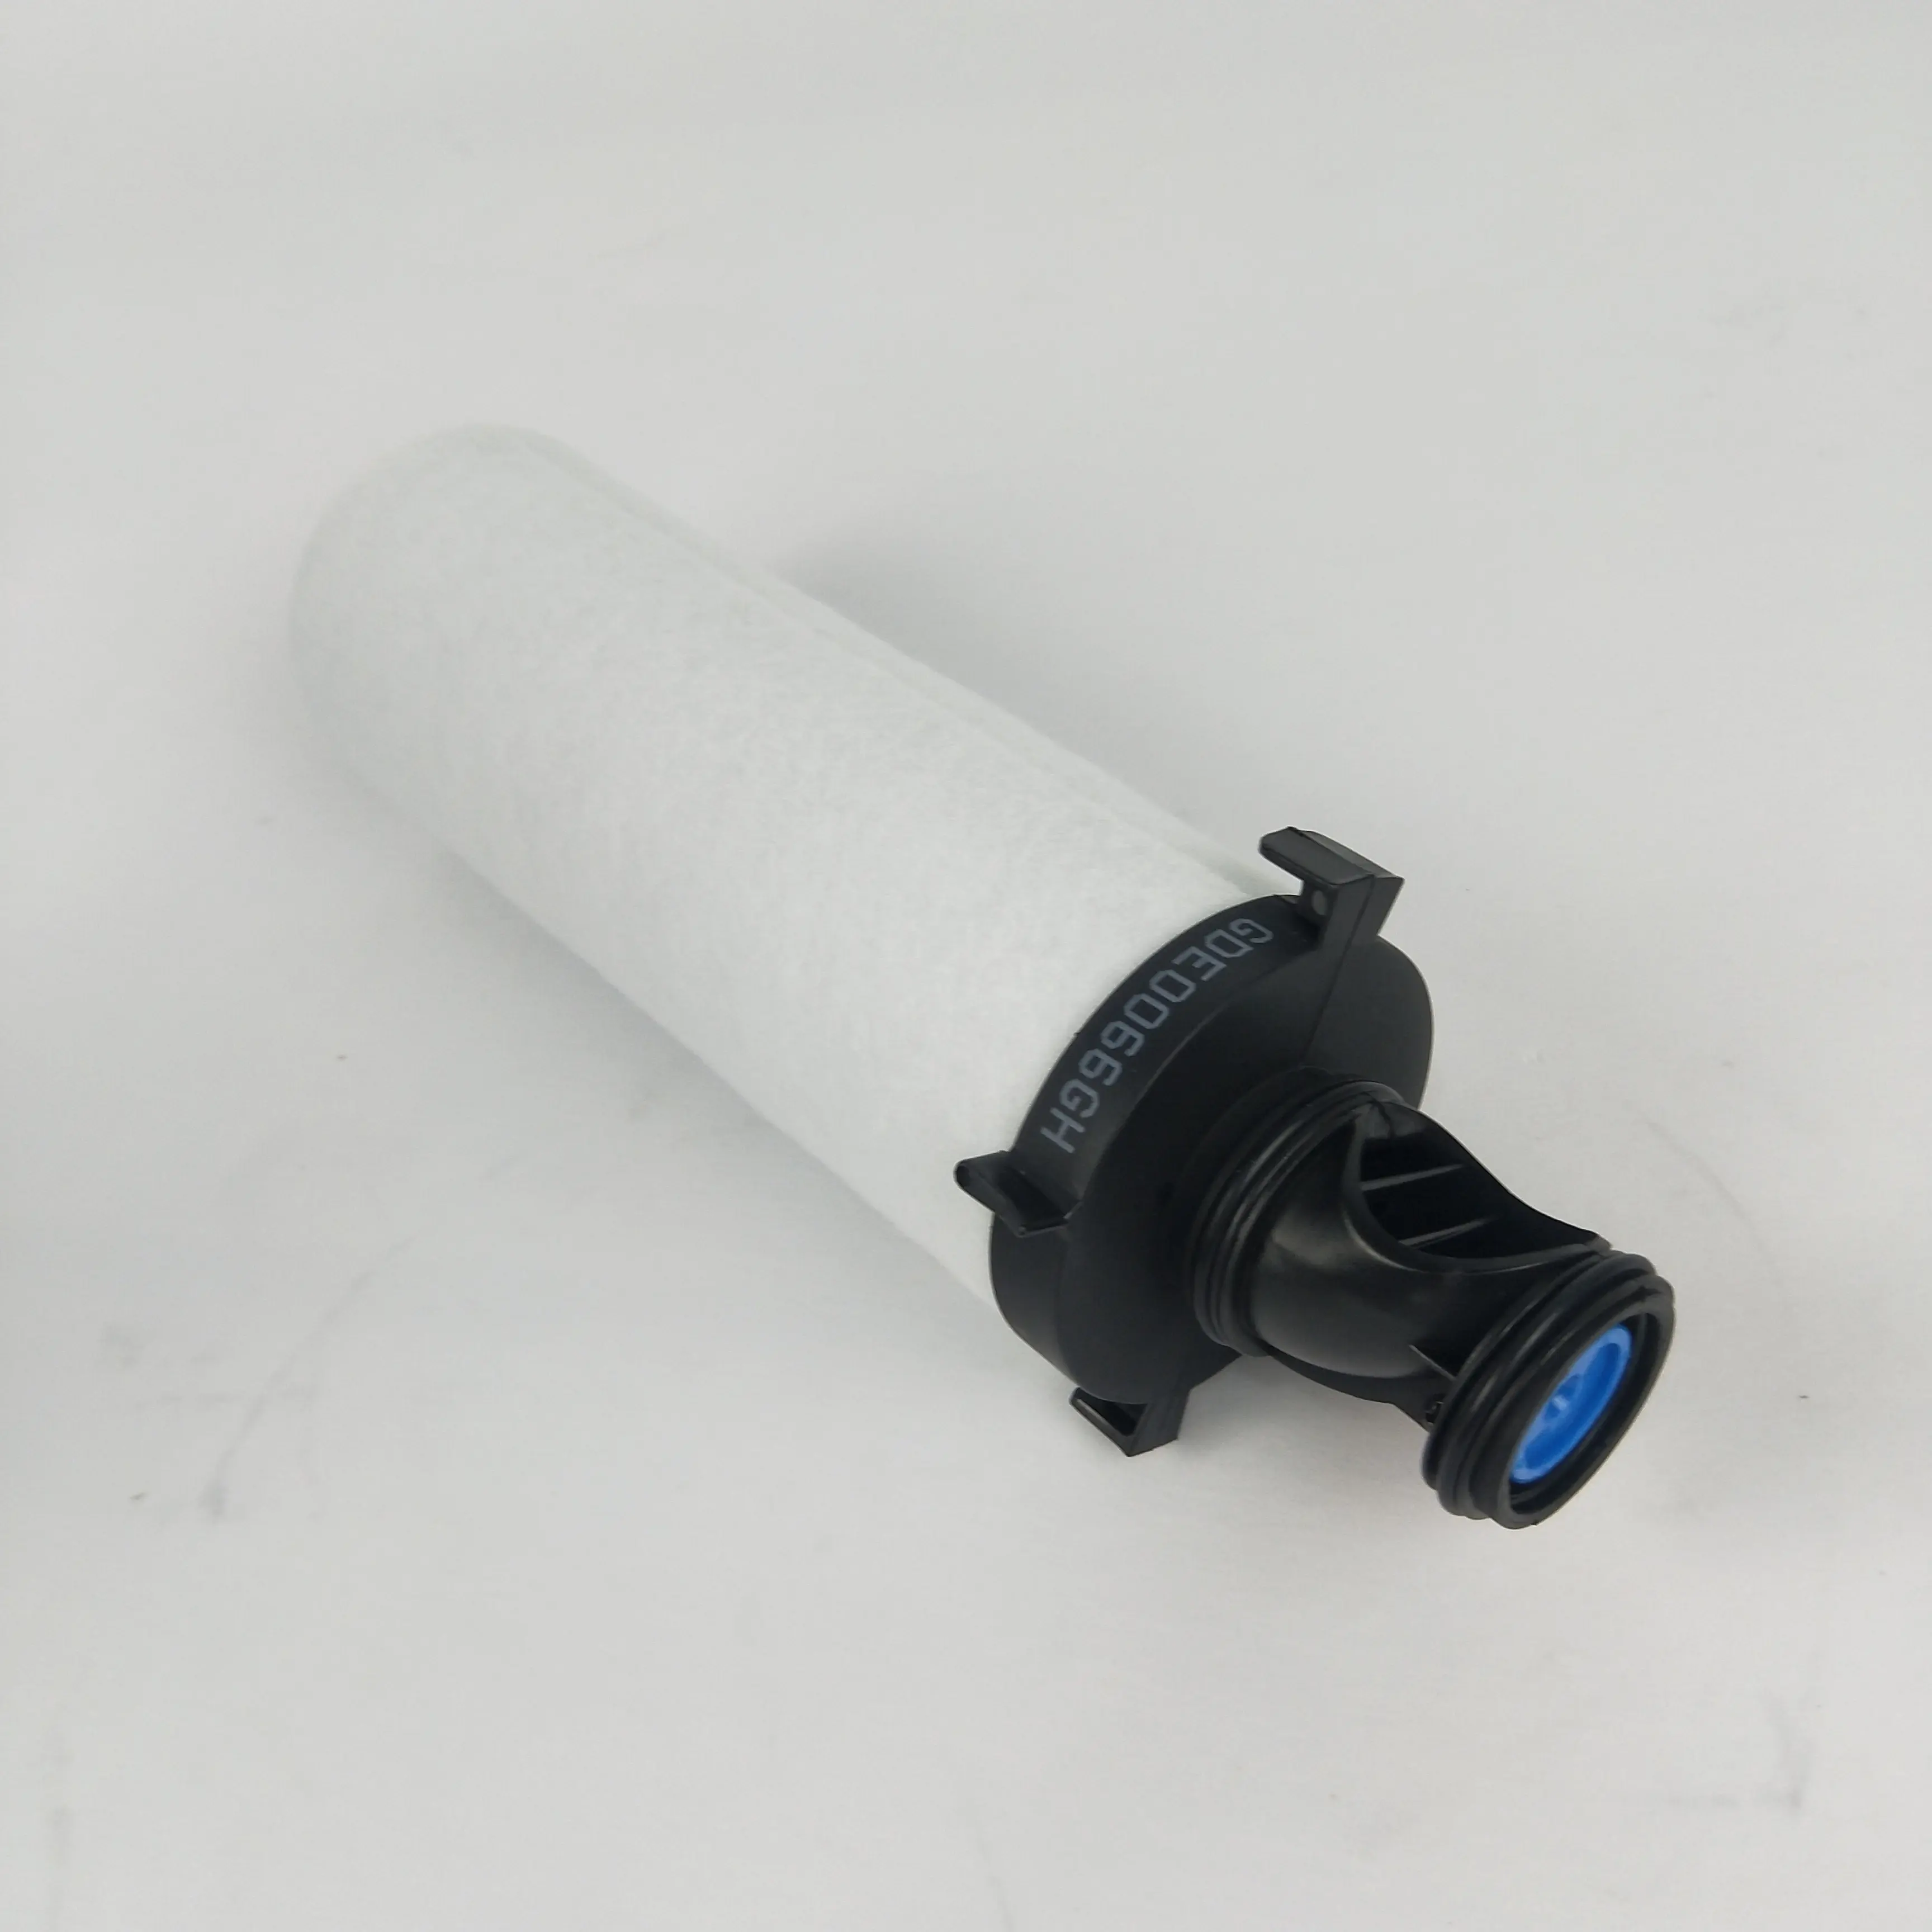 Parafuso ar compressor filtro CE0036NB comprimido inline filtro usado para comair gardner denver compressor